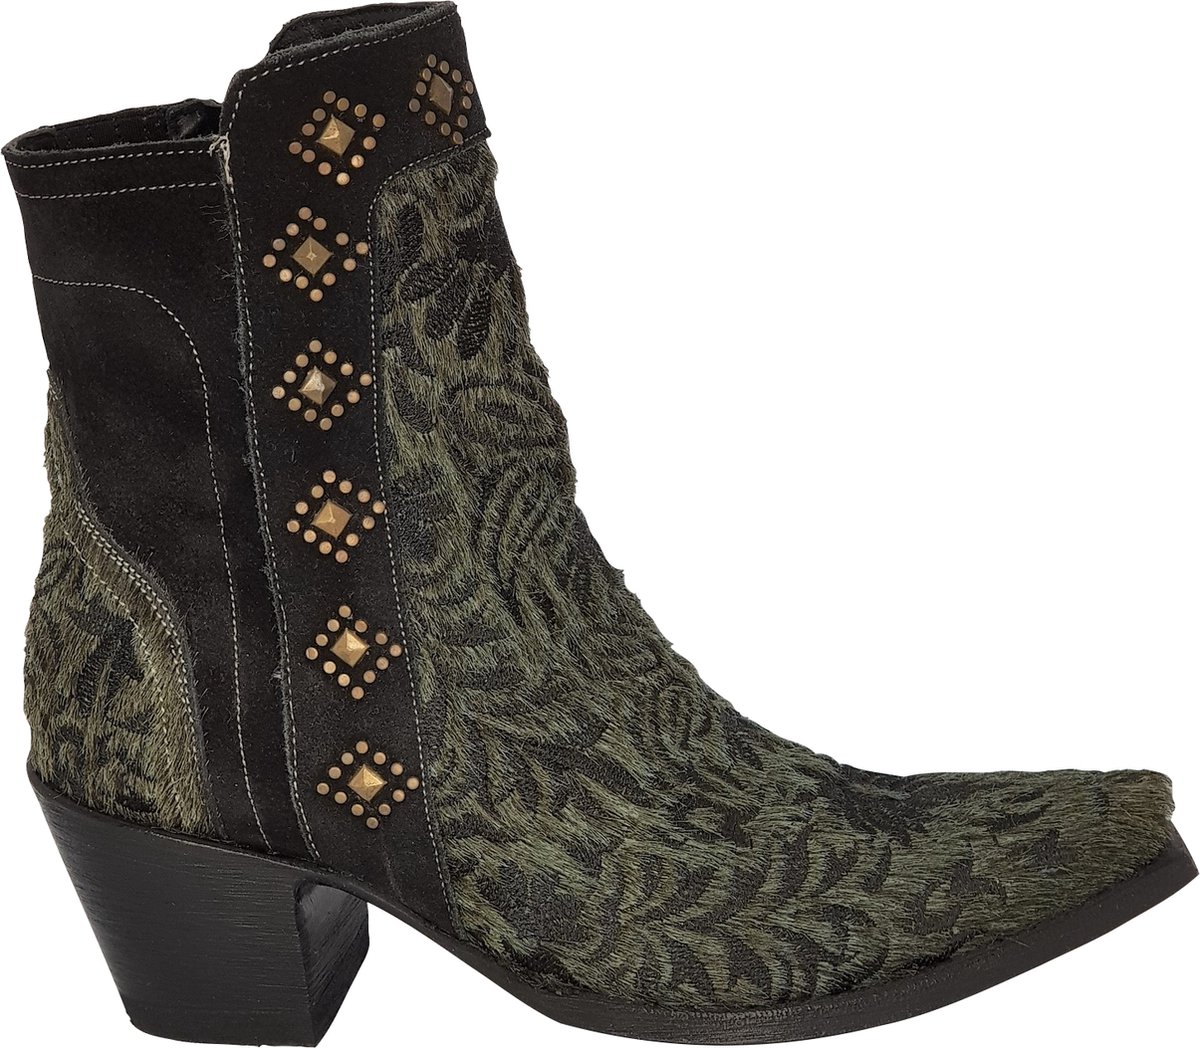 Cowboy laarzen dames Old Gringo Wink - echt leer met haartjes - groen/zwart - studs - spitse neus - maat 42